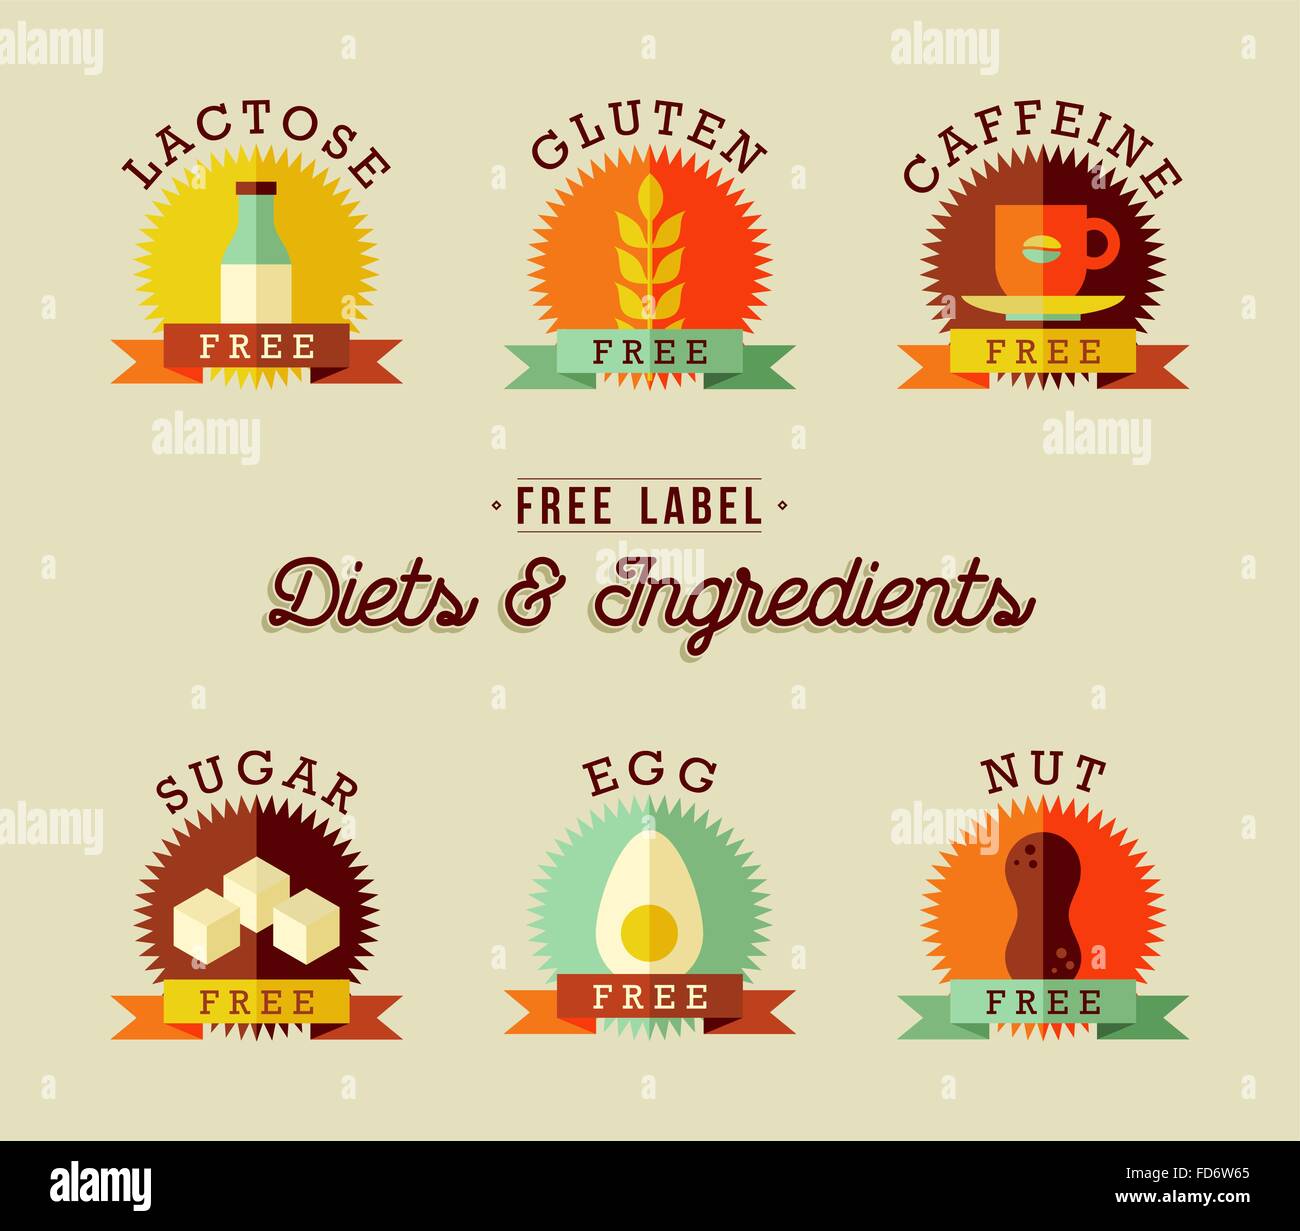 Satz von Essen Etikettendesigns in flachen Stil für eine gesunde Ernährung. Umfasst, laktosefrei, glutenfrei, Koffein, Zucker, Ei und Nuss-Allergie Stock Vektor